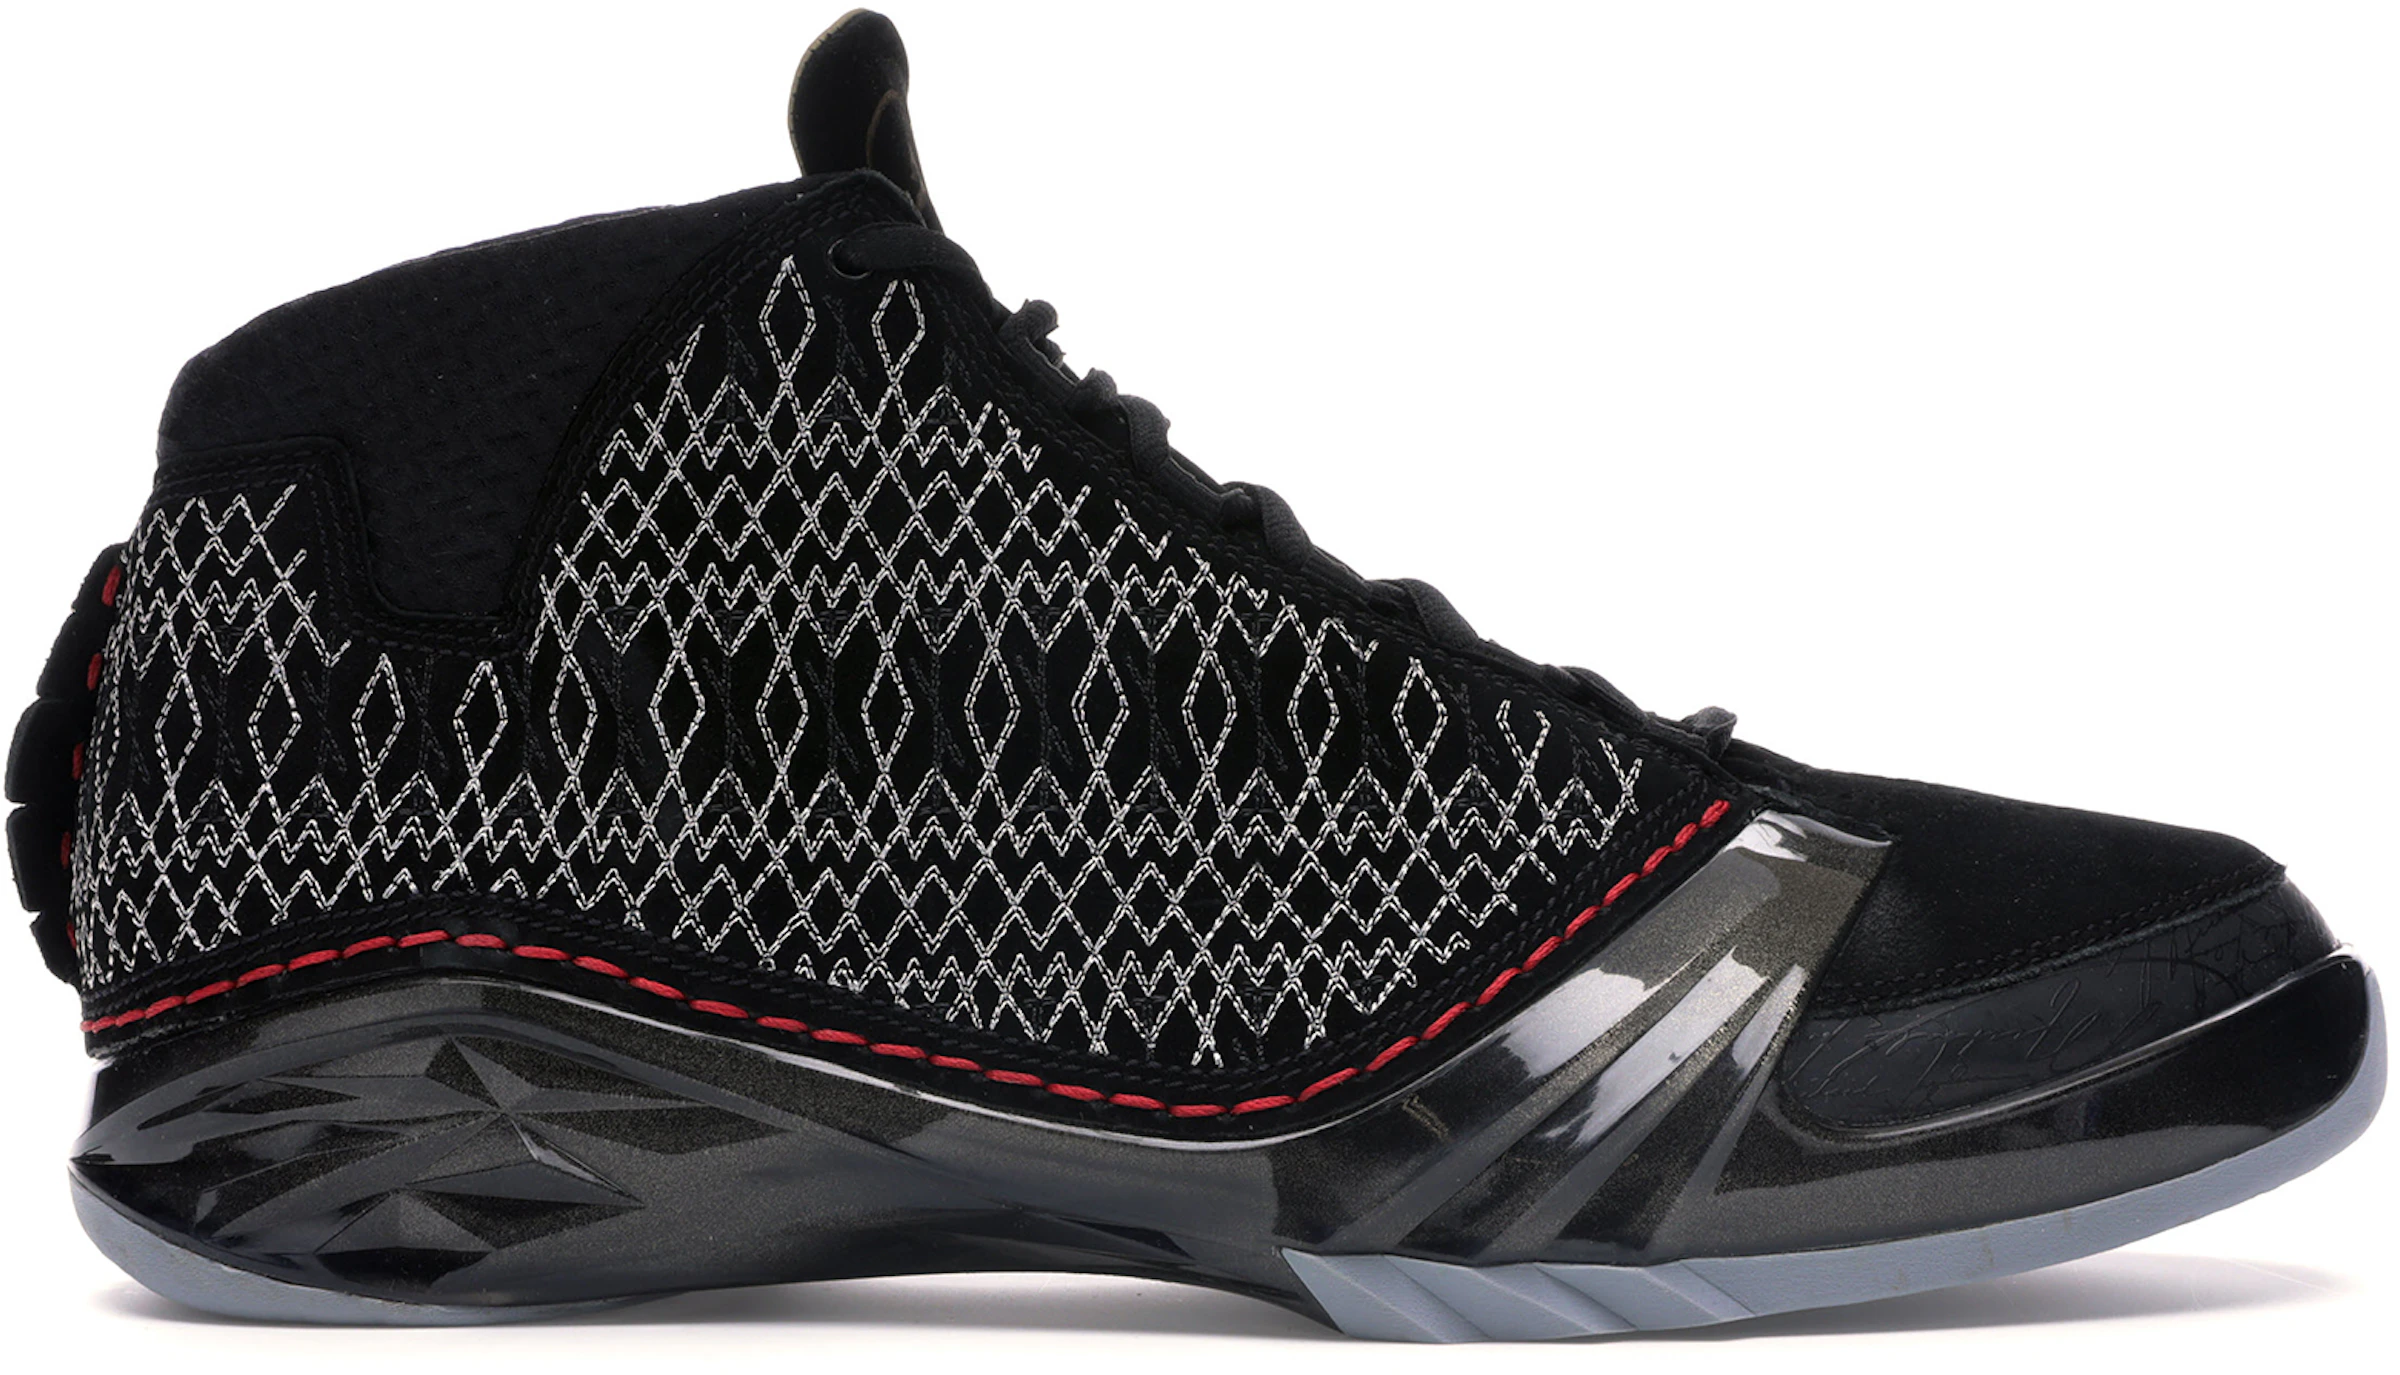 Air Jordan Calzado sneakers nuevos - StockX